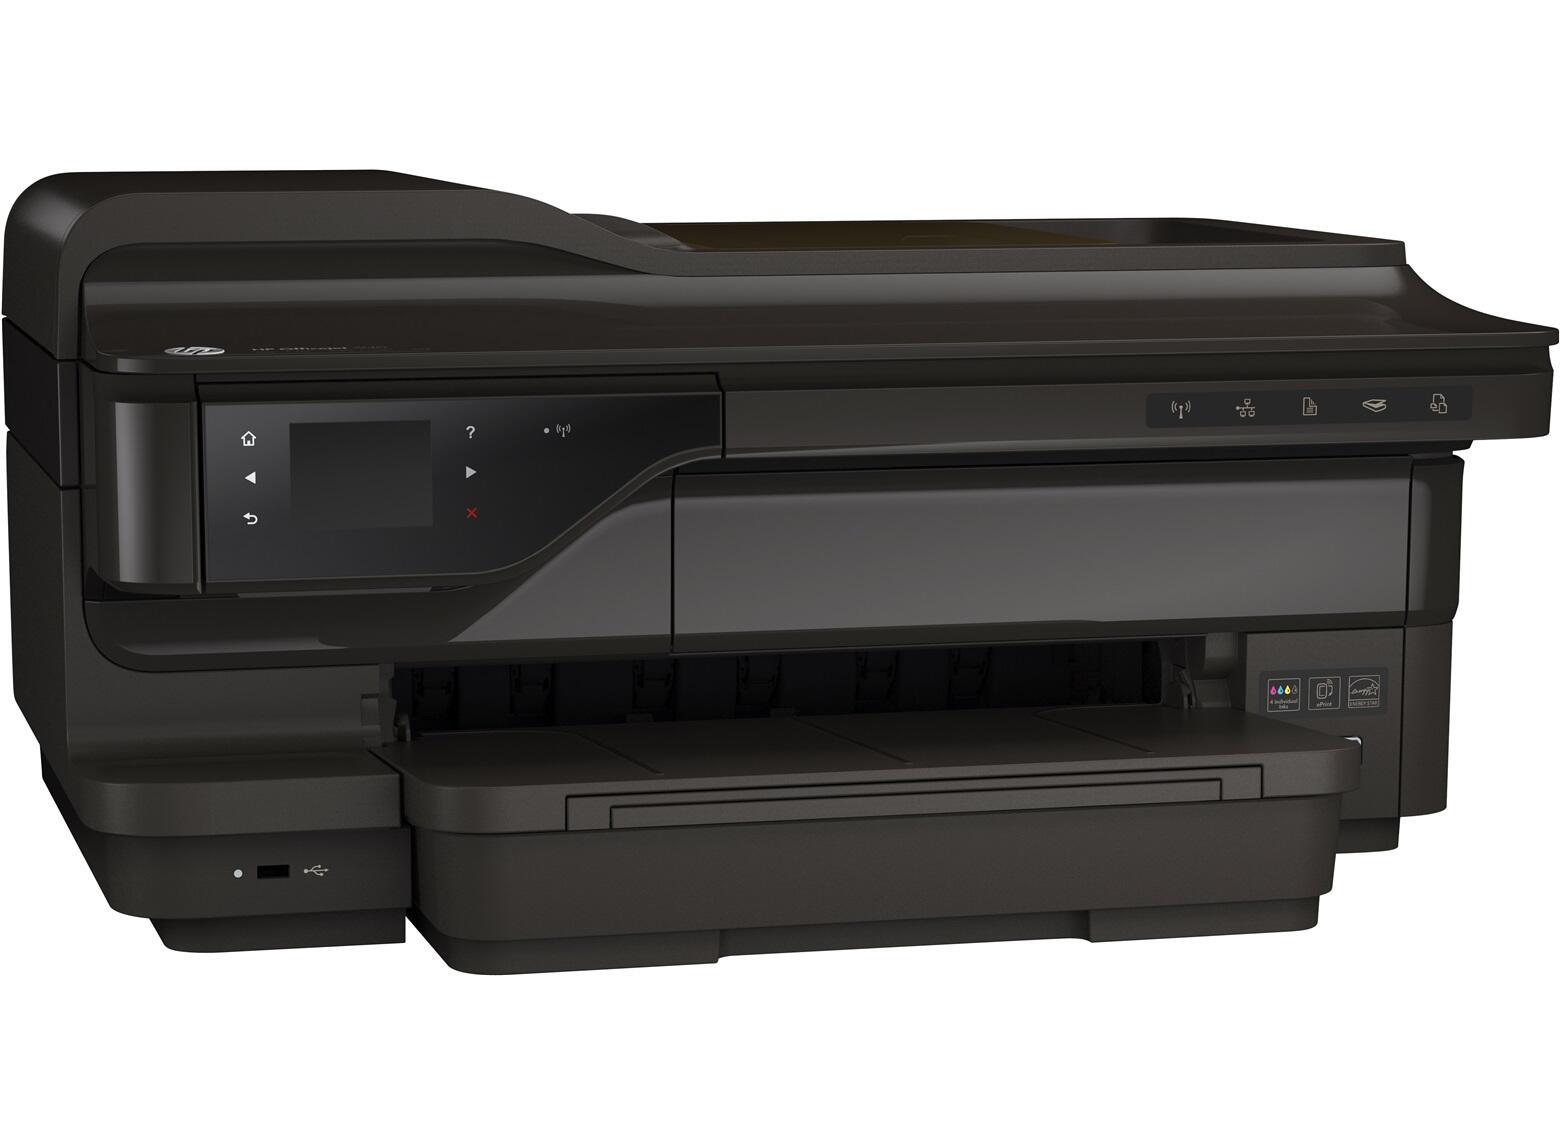 Drucker, Scanner, Kopierer, 4800 x 1200 dpi, WiFi, USB 2.0 HP OfficeJet 7610-CR769A Multifunktion Großformatdrucker schwarz 